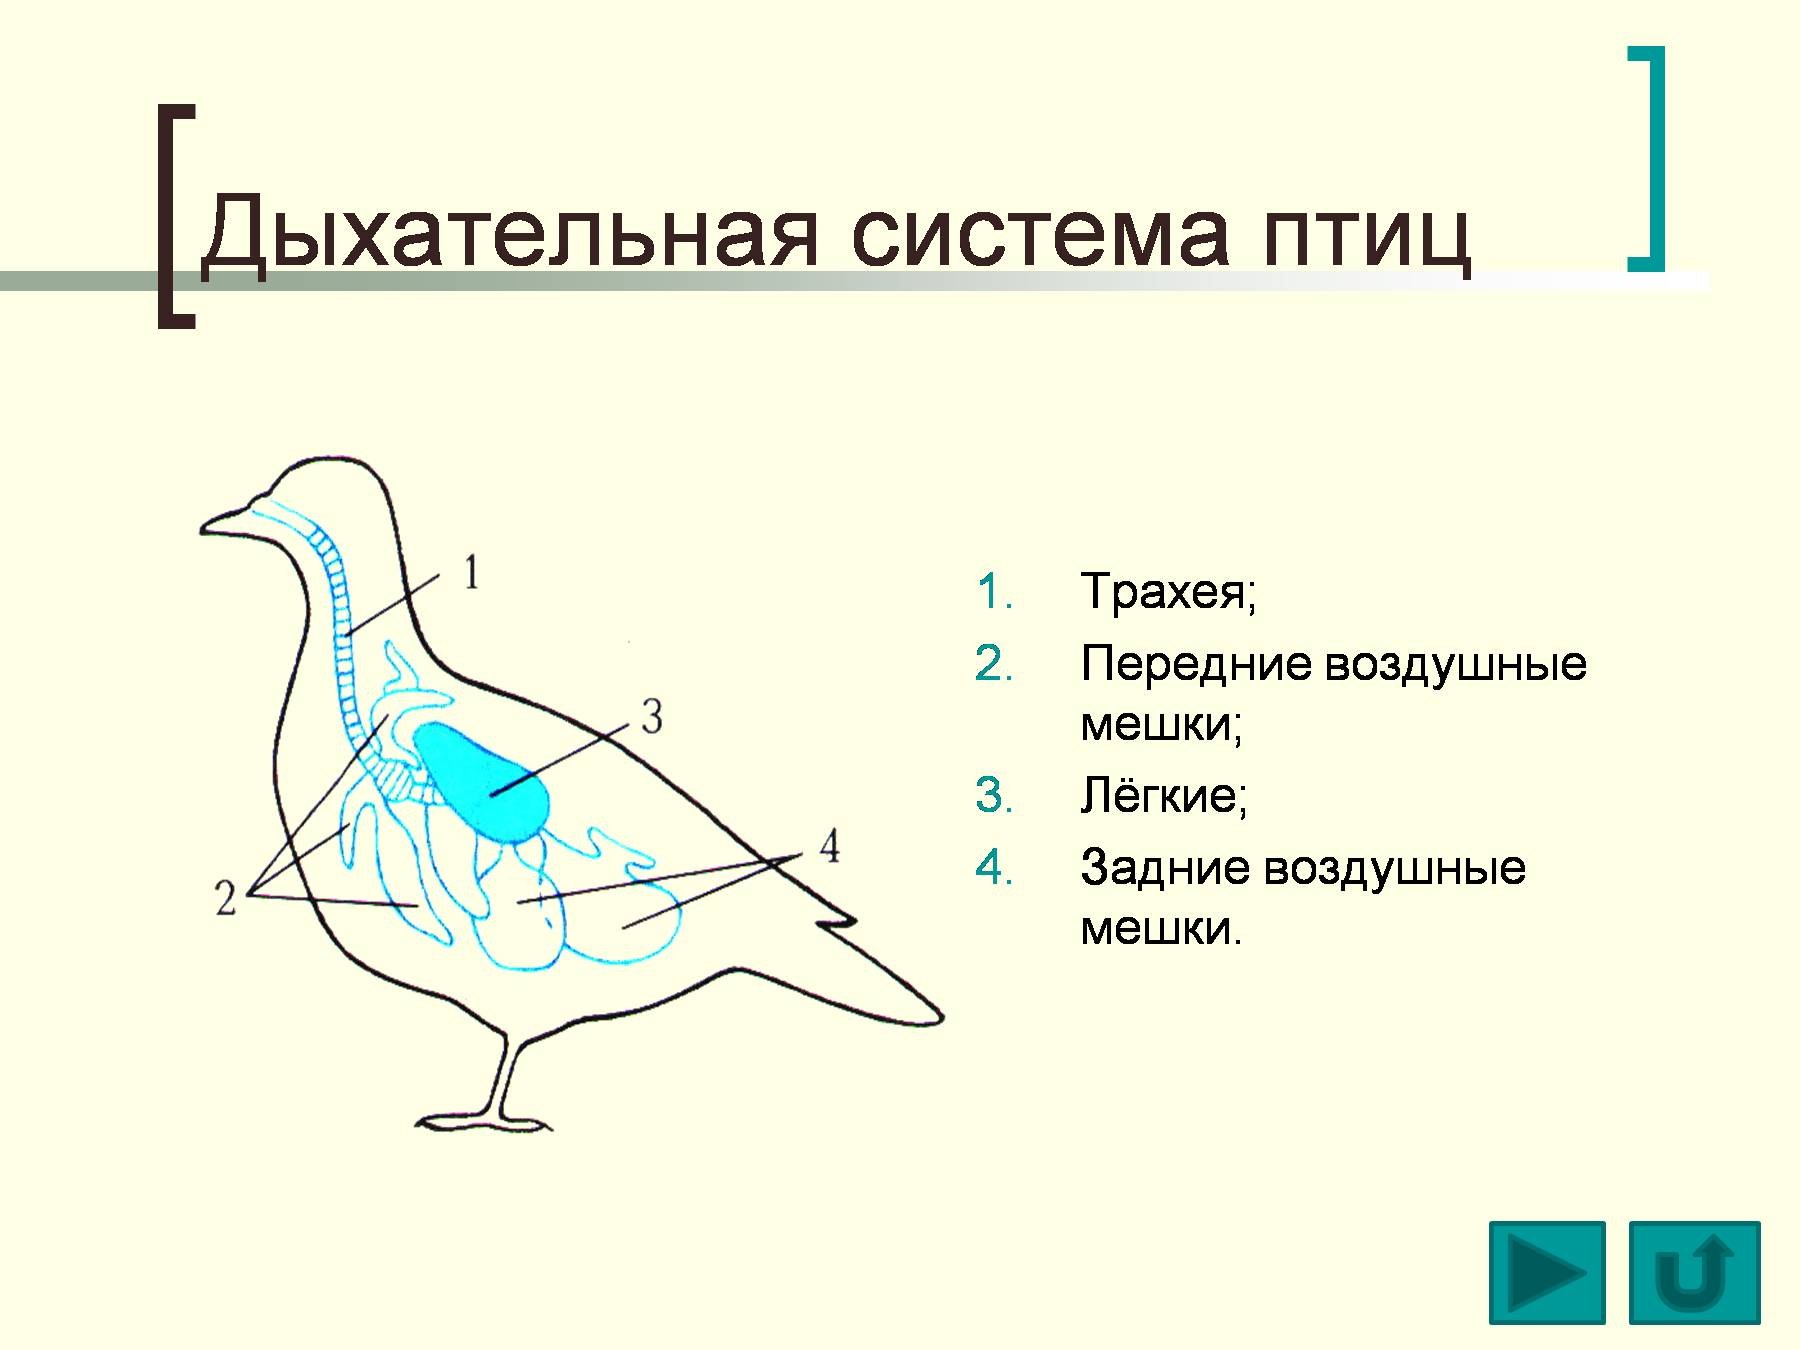 Выберите особенности строения дыхательной системы птиц